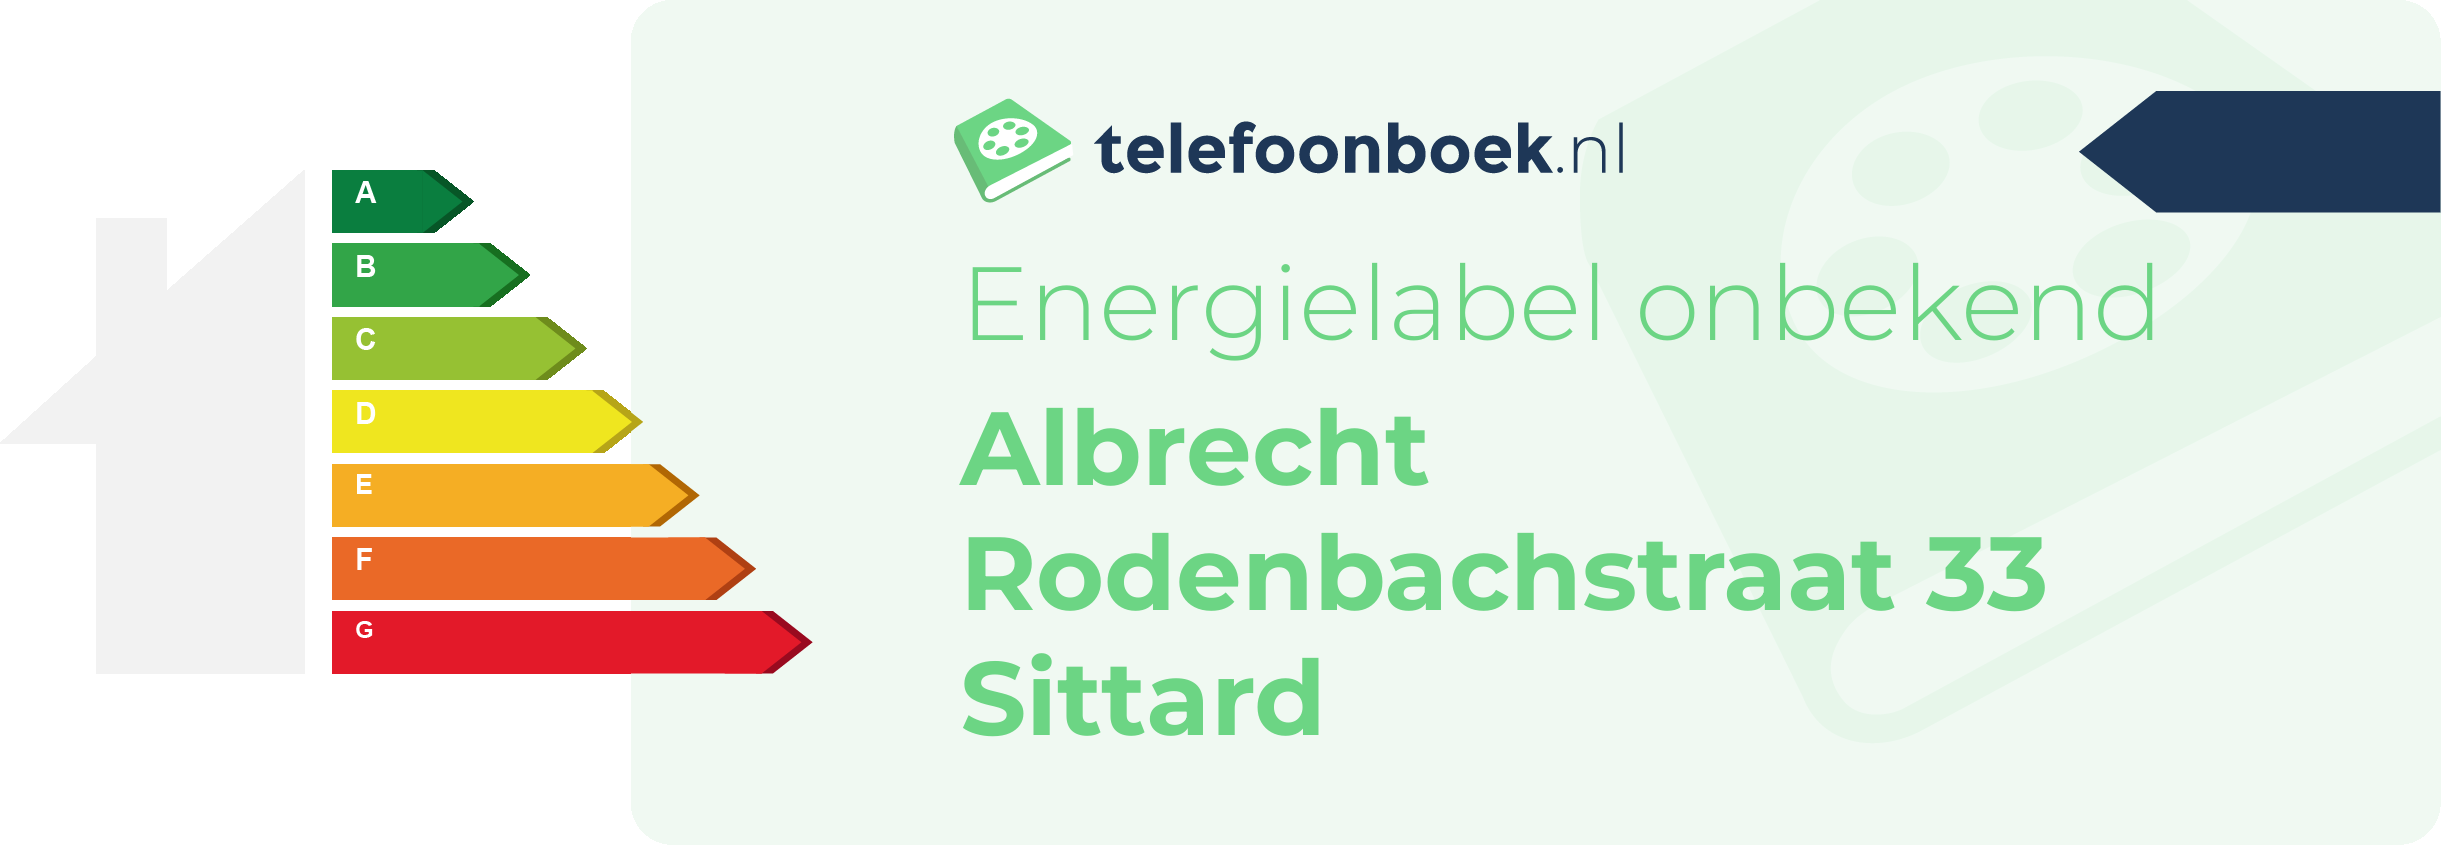 Energielabel Albrecht Rodenbachstraat 33 Sittard